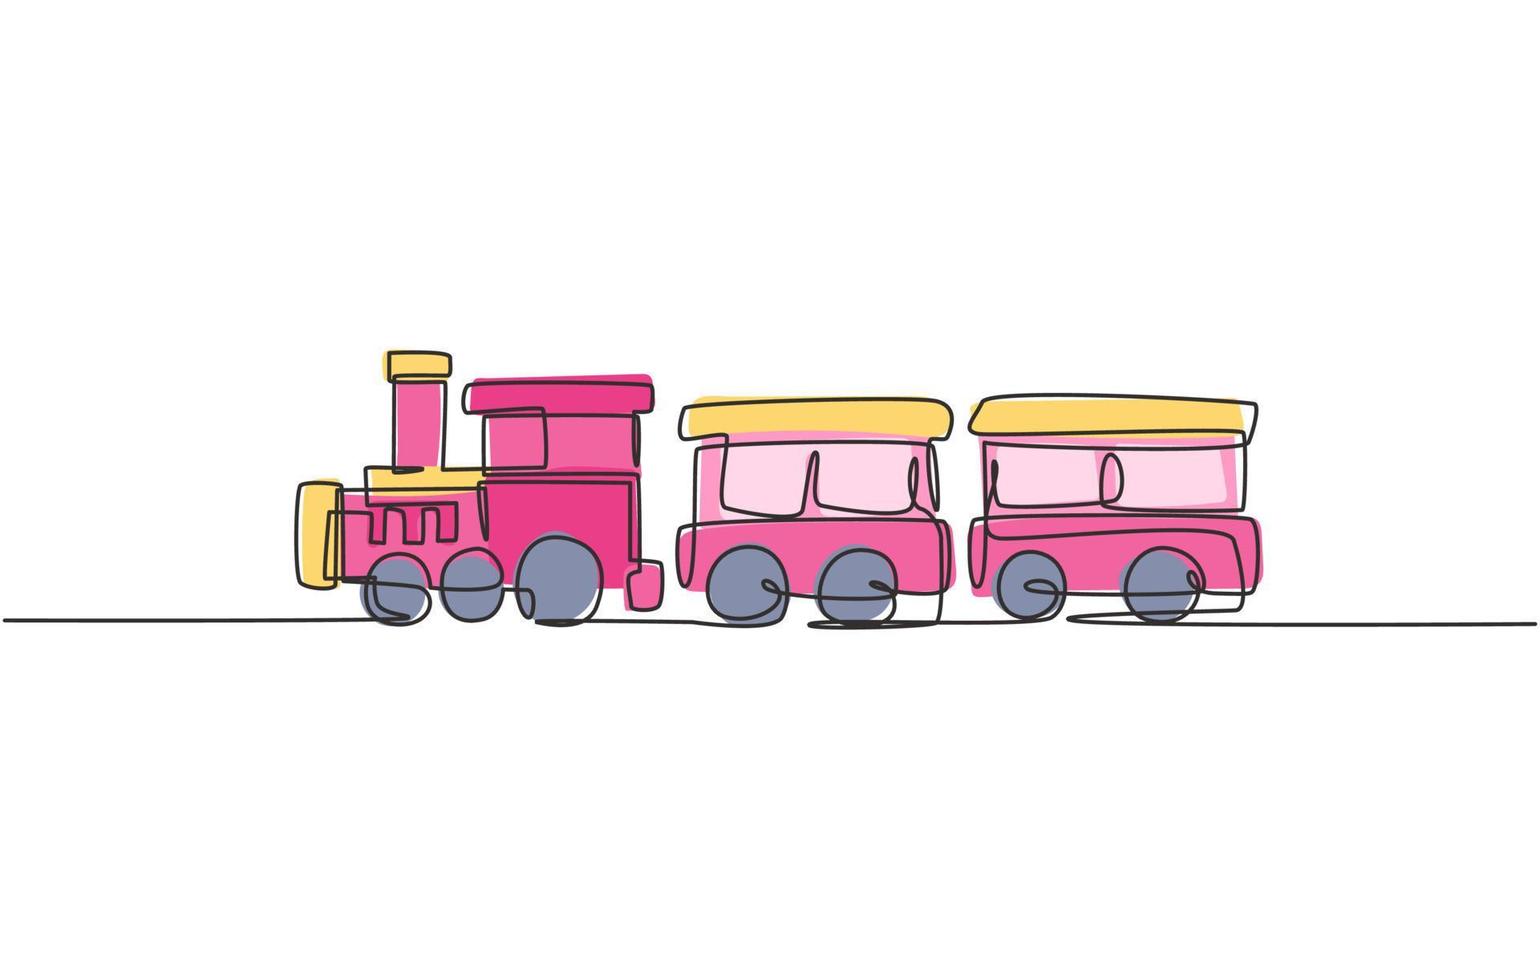 Desenho linear único e contínuo de uma locomotiva com duas carruagens em forma de sistema de vapor móvel em parque de diversões para o transporte de passageiros. ilustração vetorial desenho gráfico de uma linha vetor